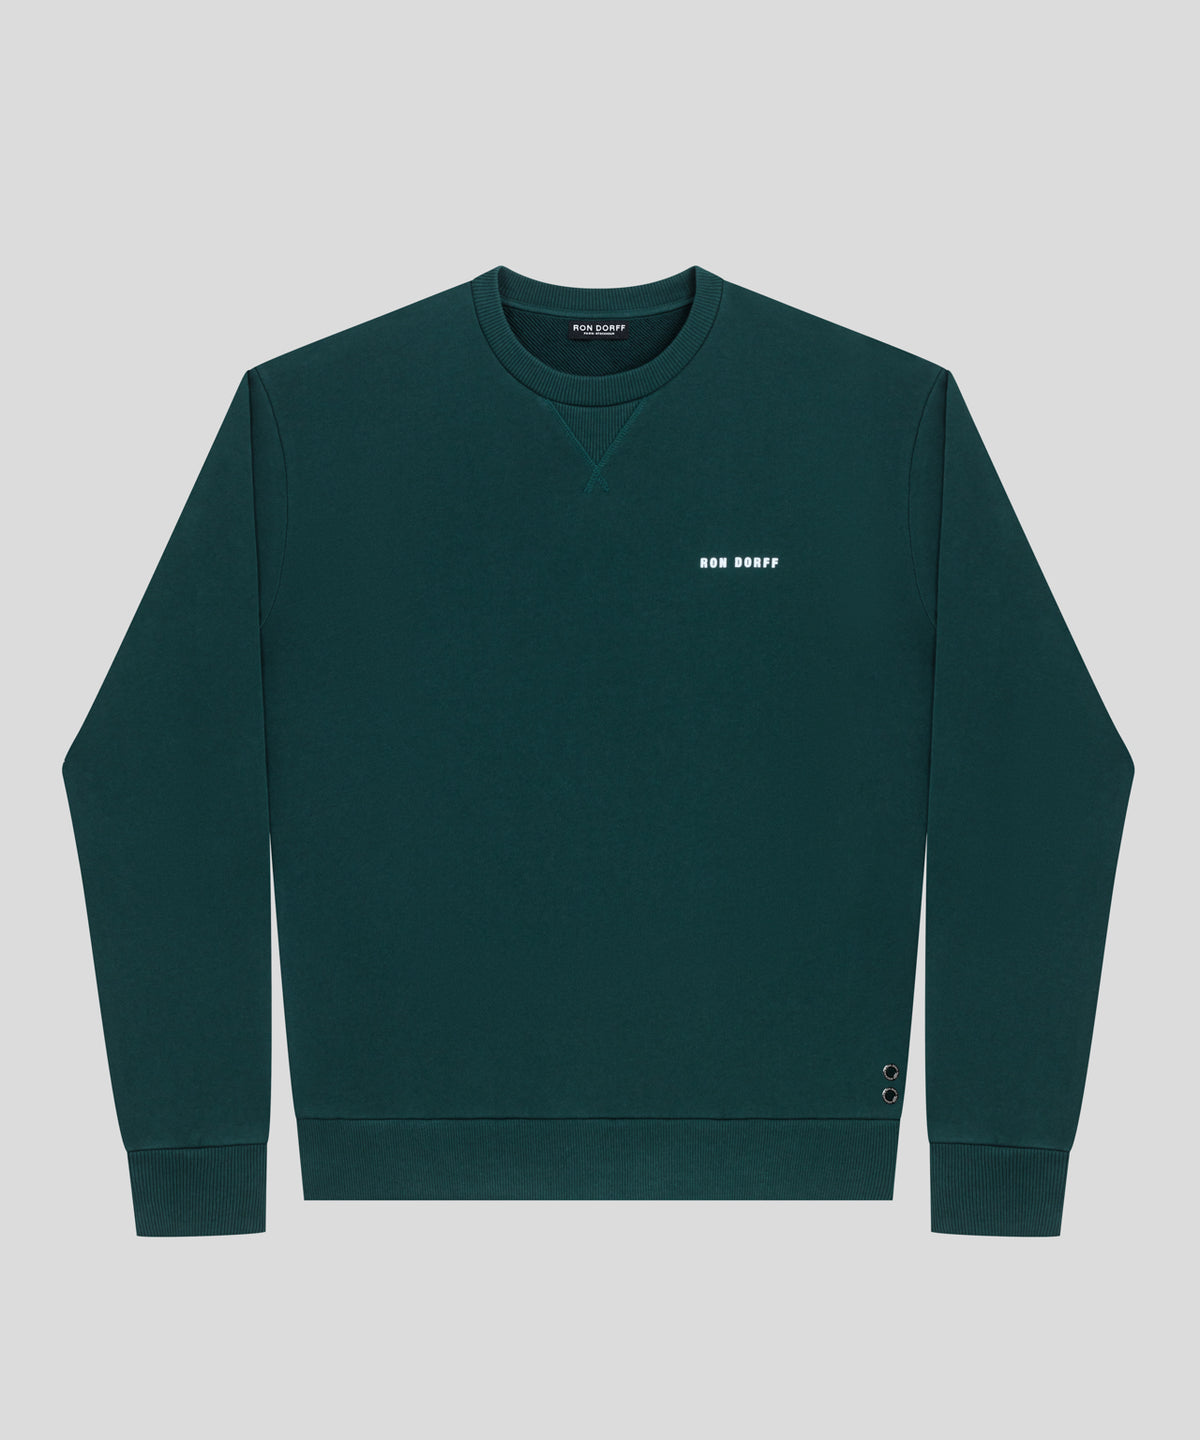 Sweatshirt coupe décontractée en coton organique à imprimé RON DORFF: Vert sapin